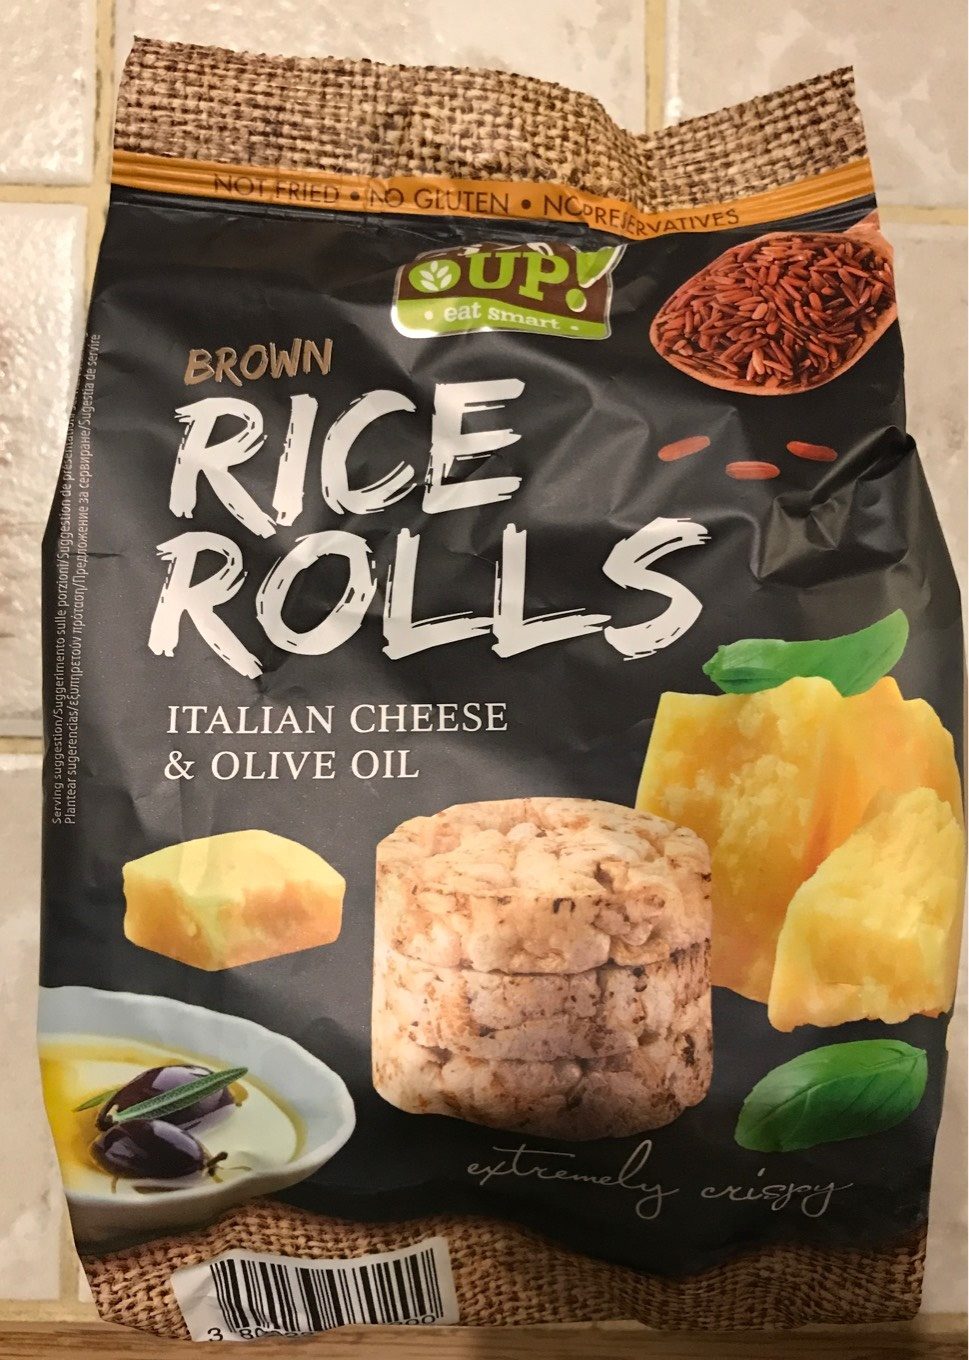 Mini galettes de riz brun à grains entiers saveur fromage italien - Product - fr